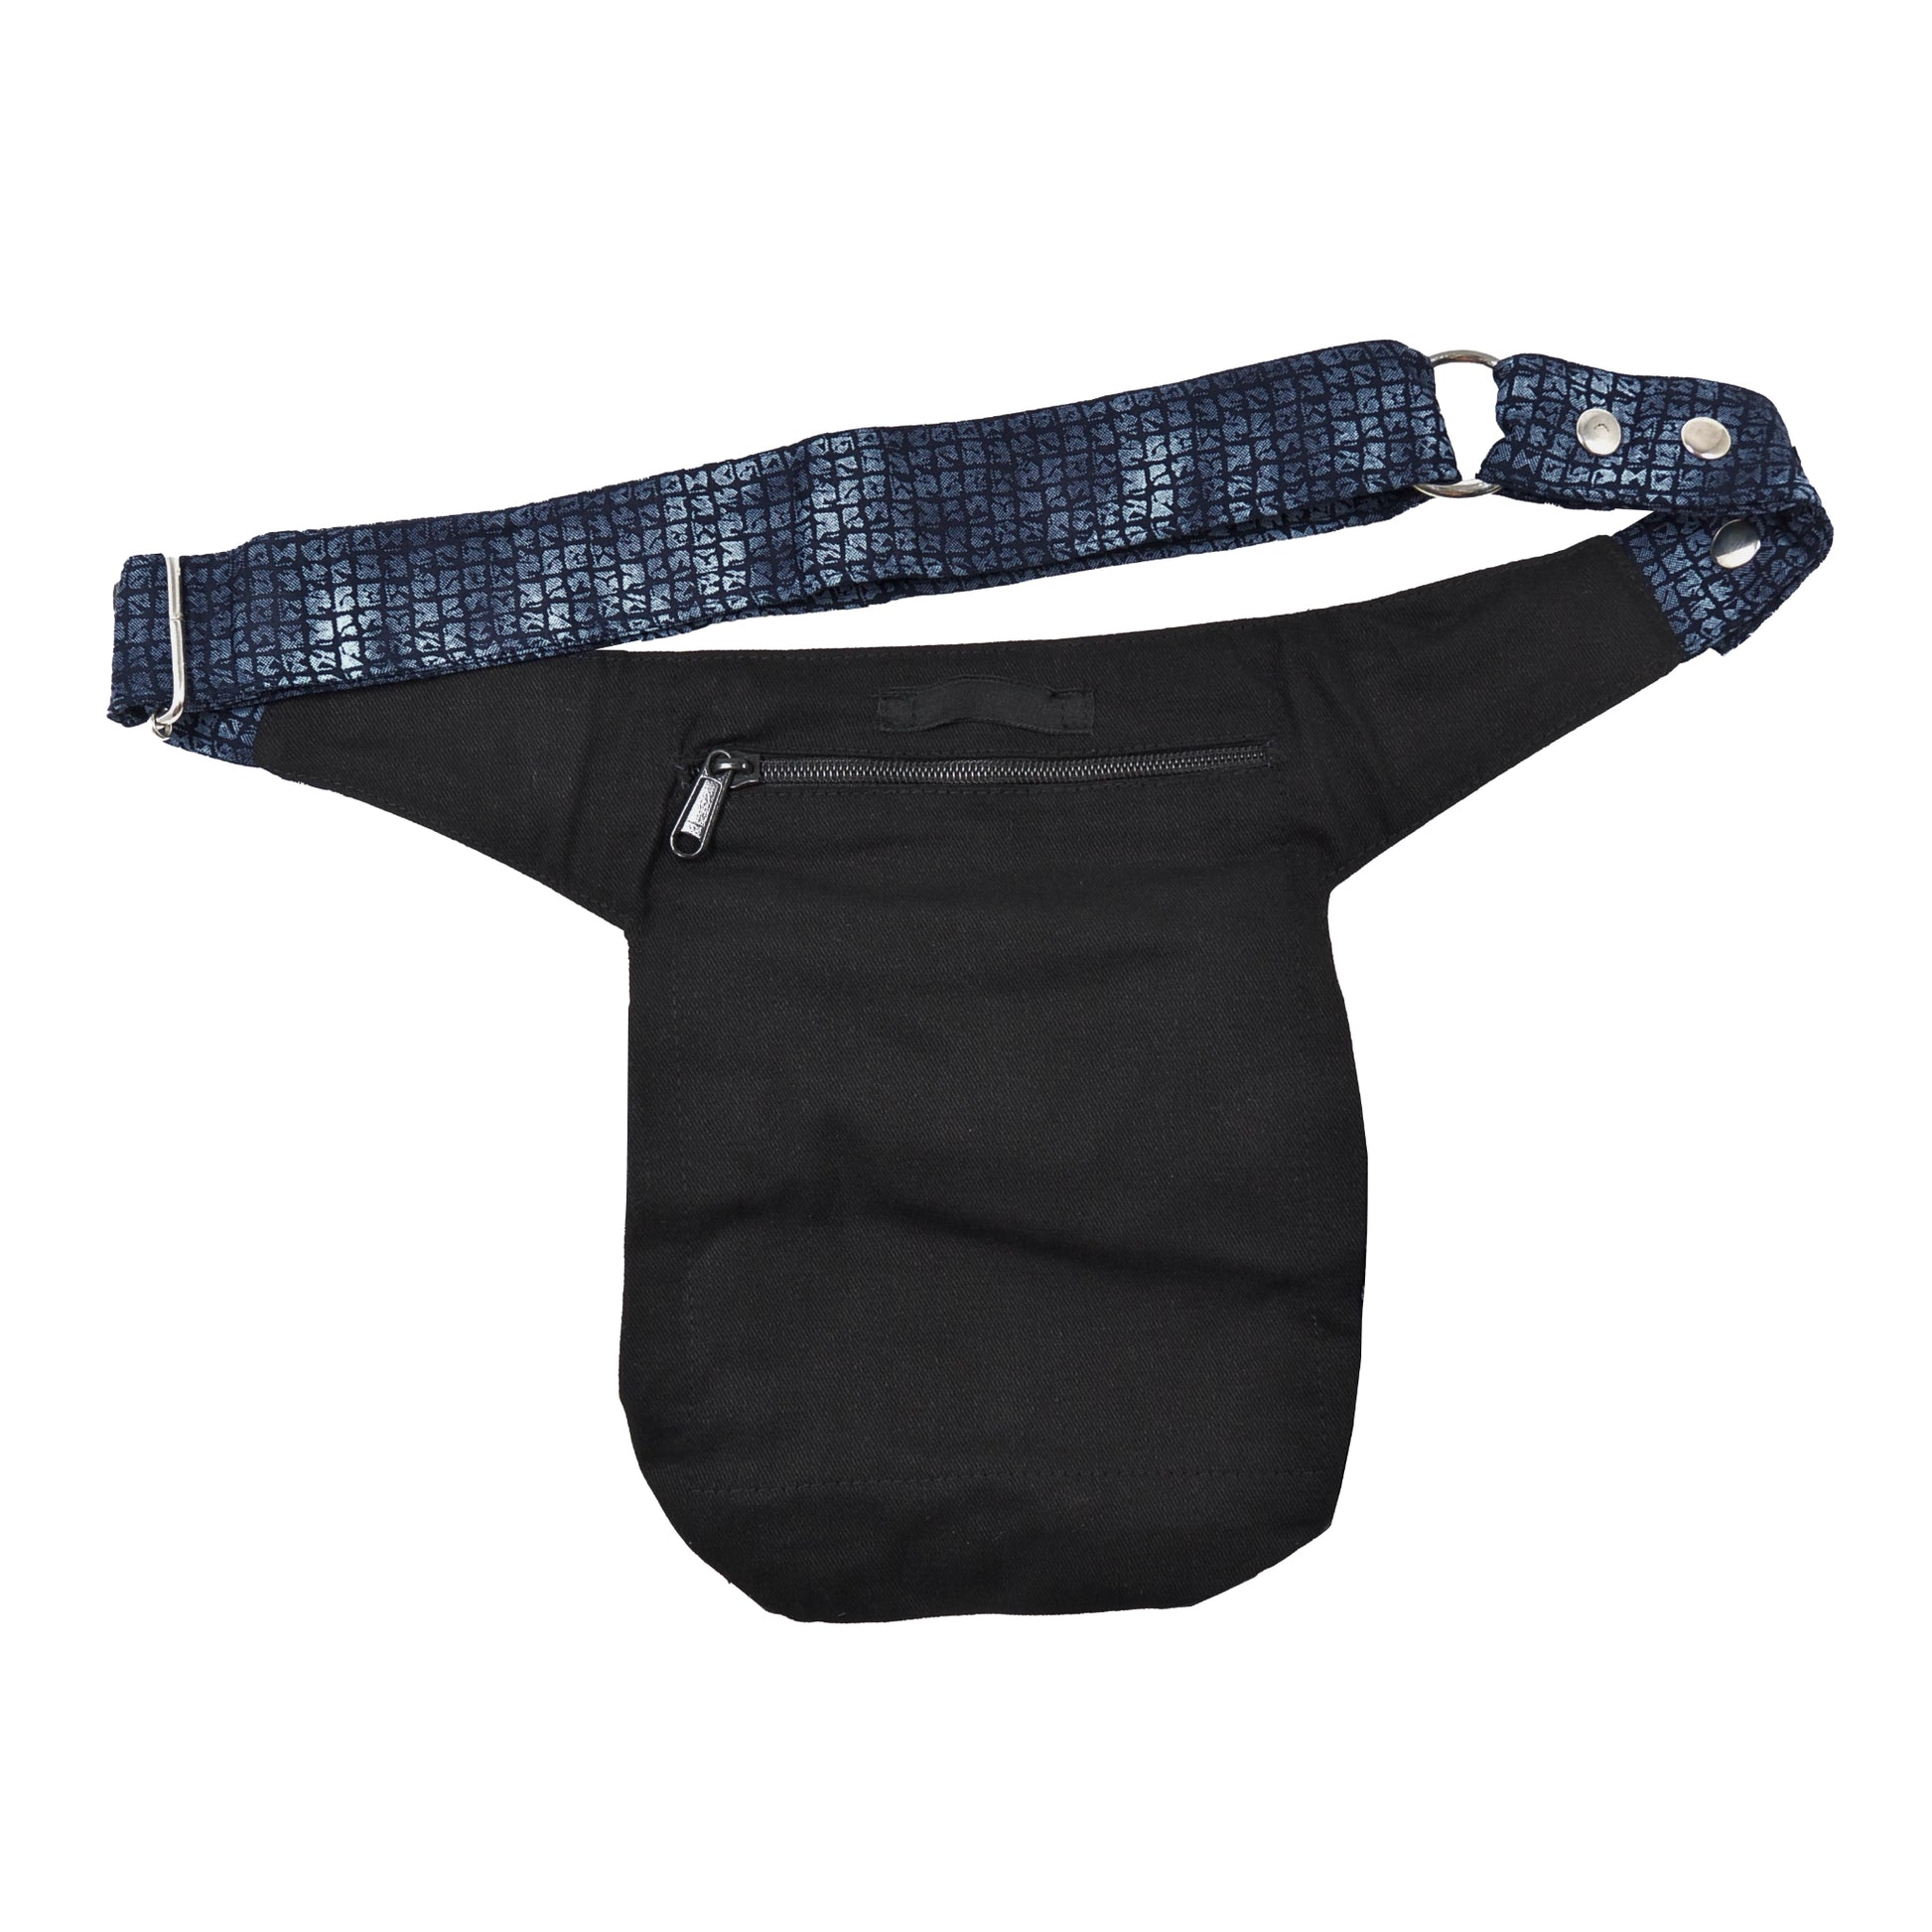 Bauchtasche Hüfttasche Stoff Baumwolle in Blau mit Muster Mix mit Reißverschlussfach auf der hinteren Seite.